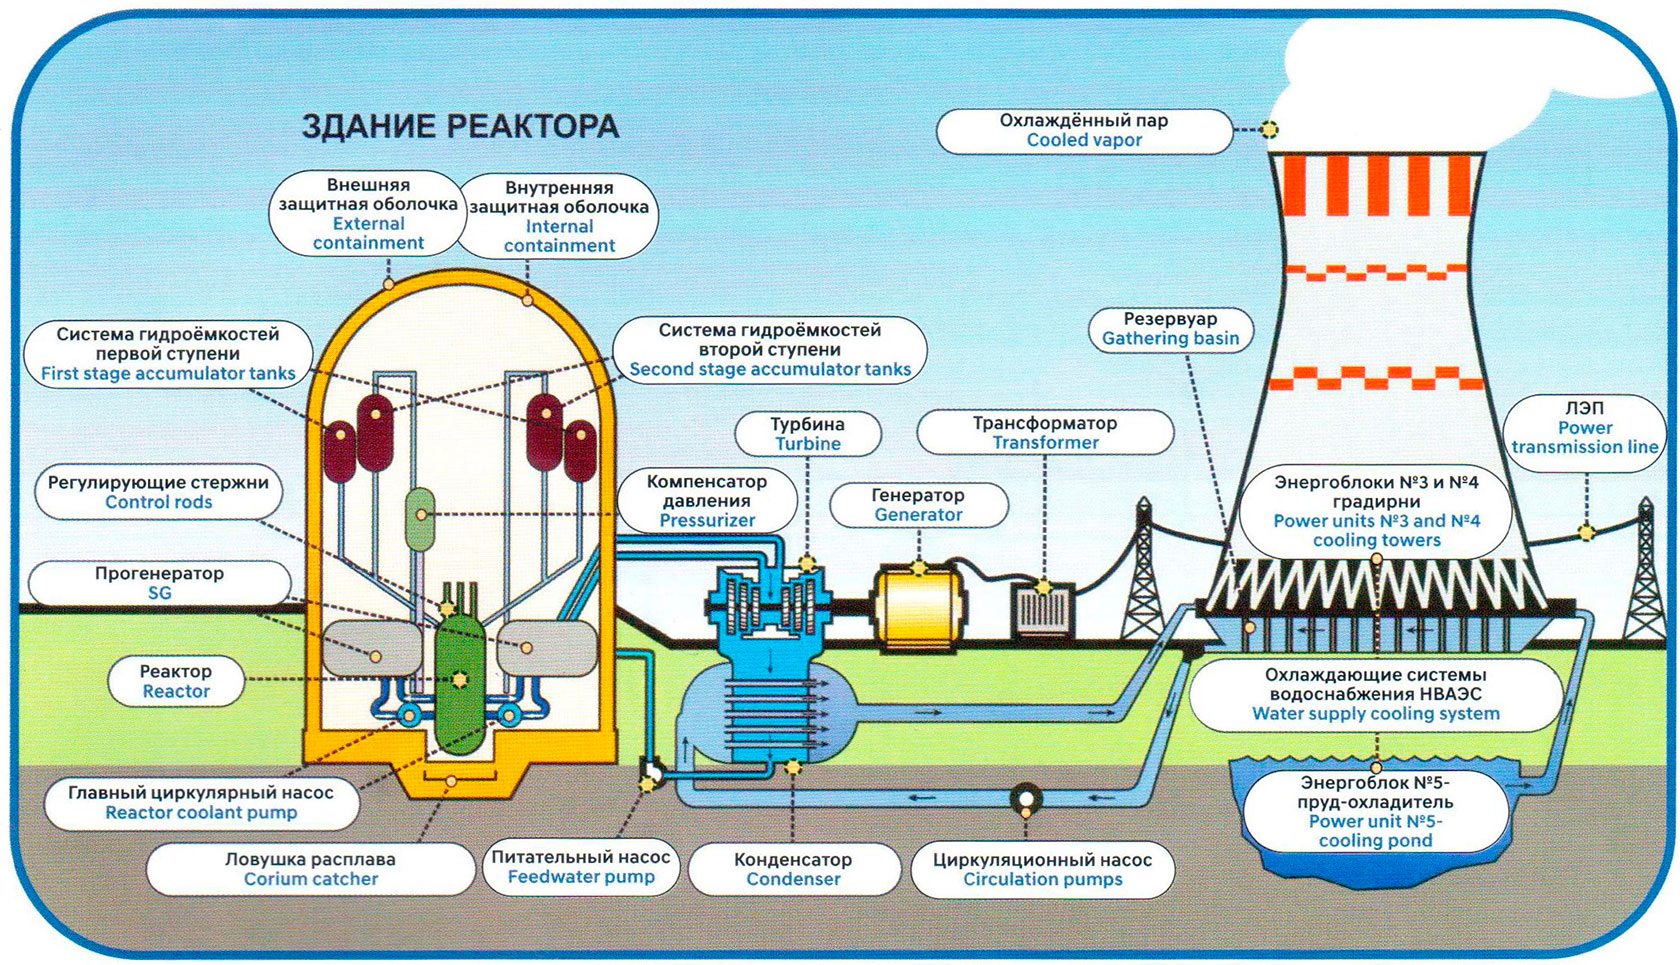 Реактор поколения 3+ ВВЭР-1200